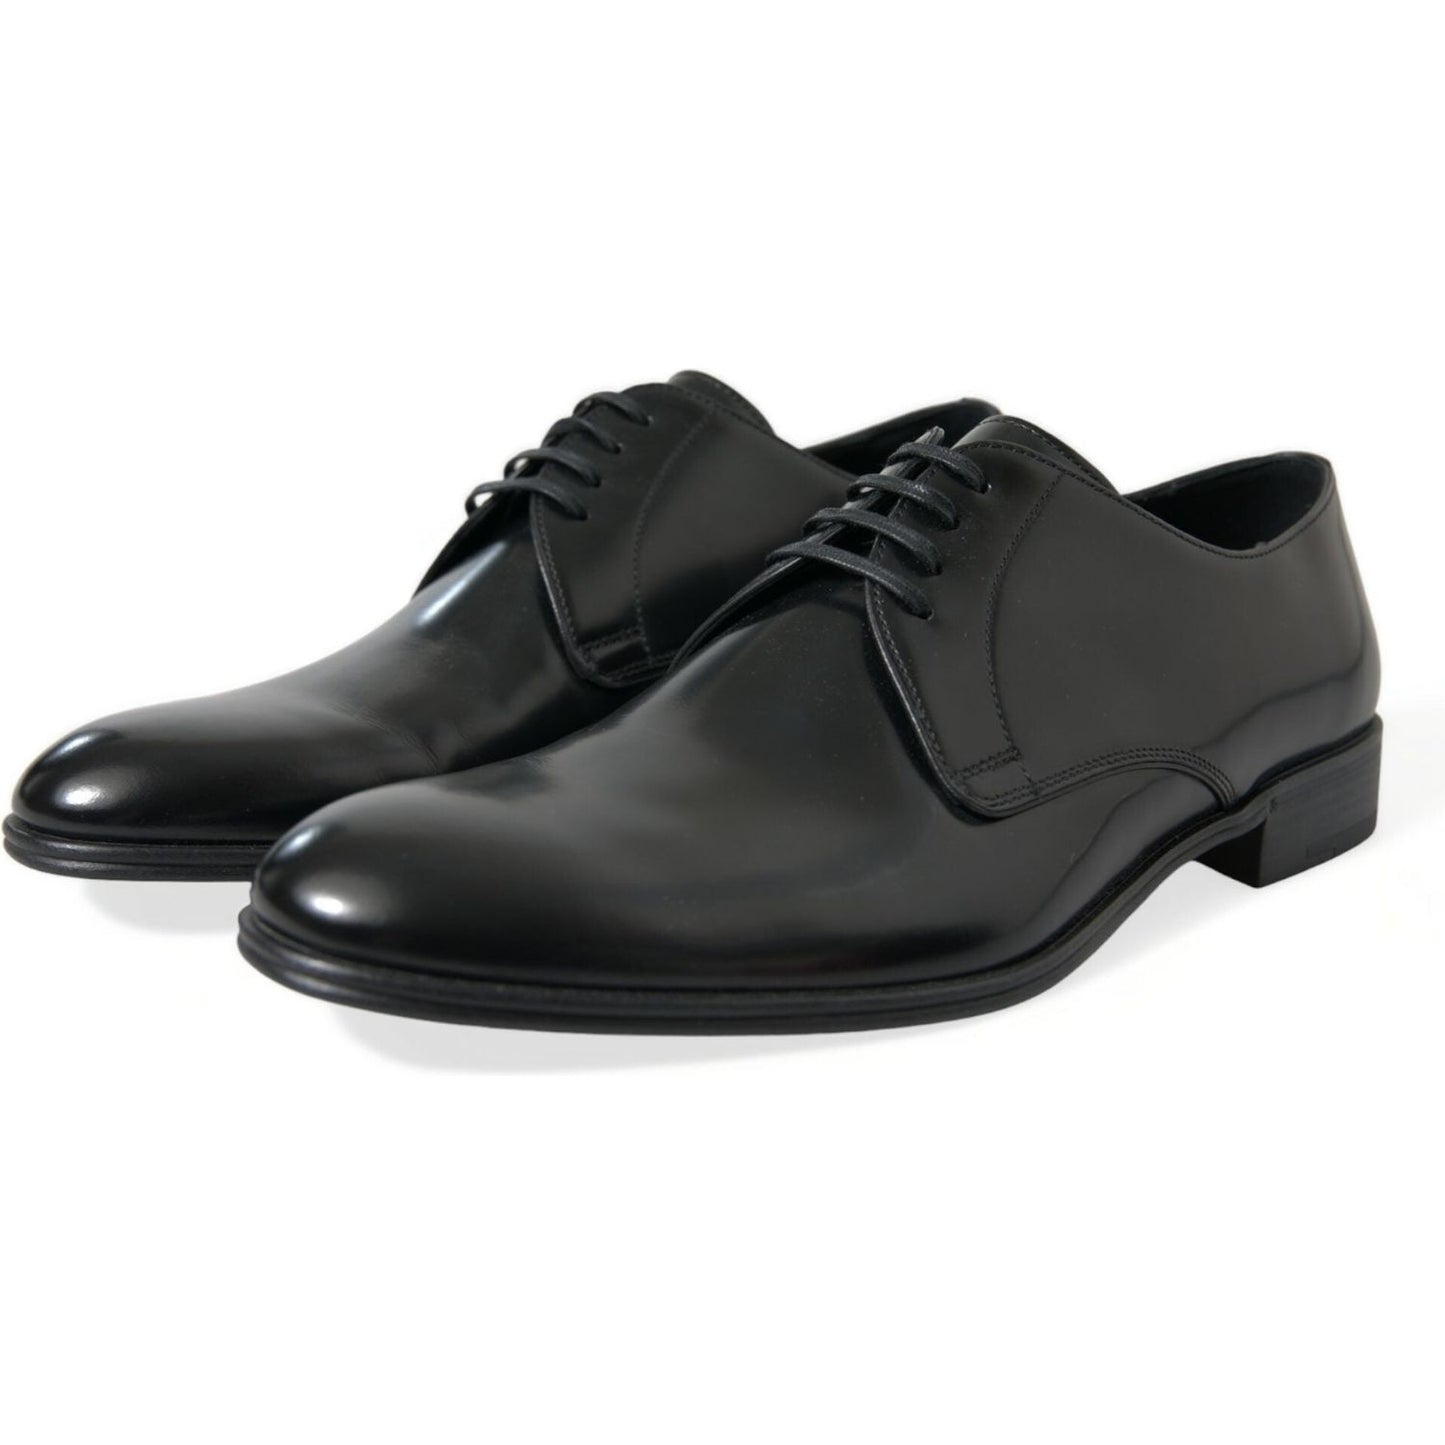 Dolce & Gabbana | Elegant Black Leather Derby Formal Shoes| McRichard Designer Brands   